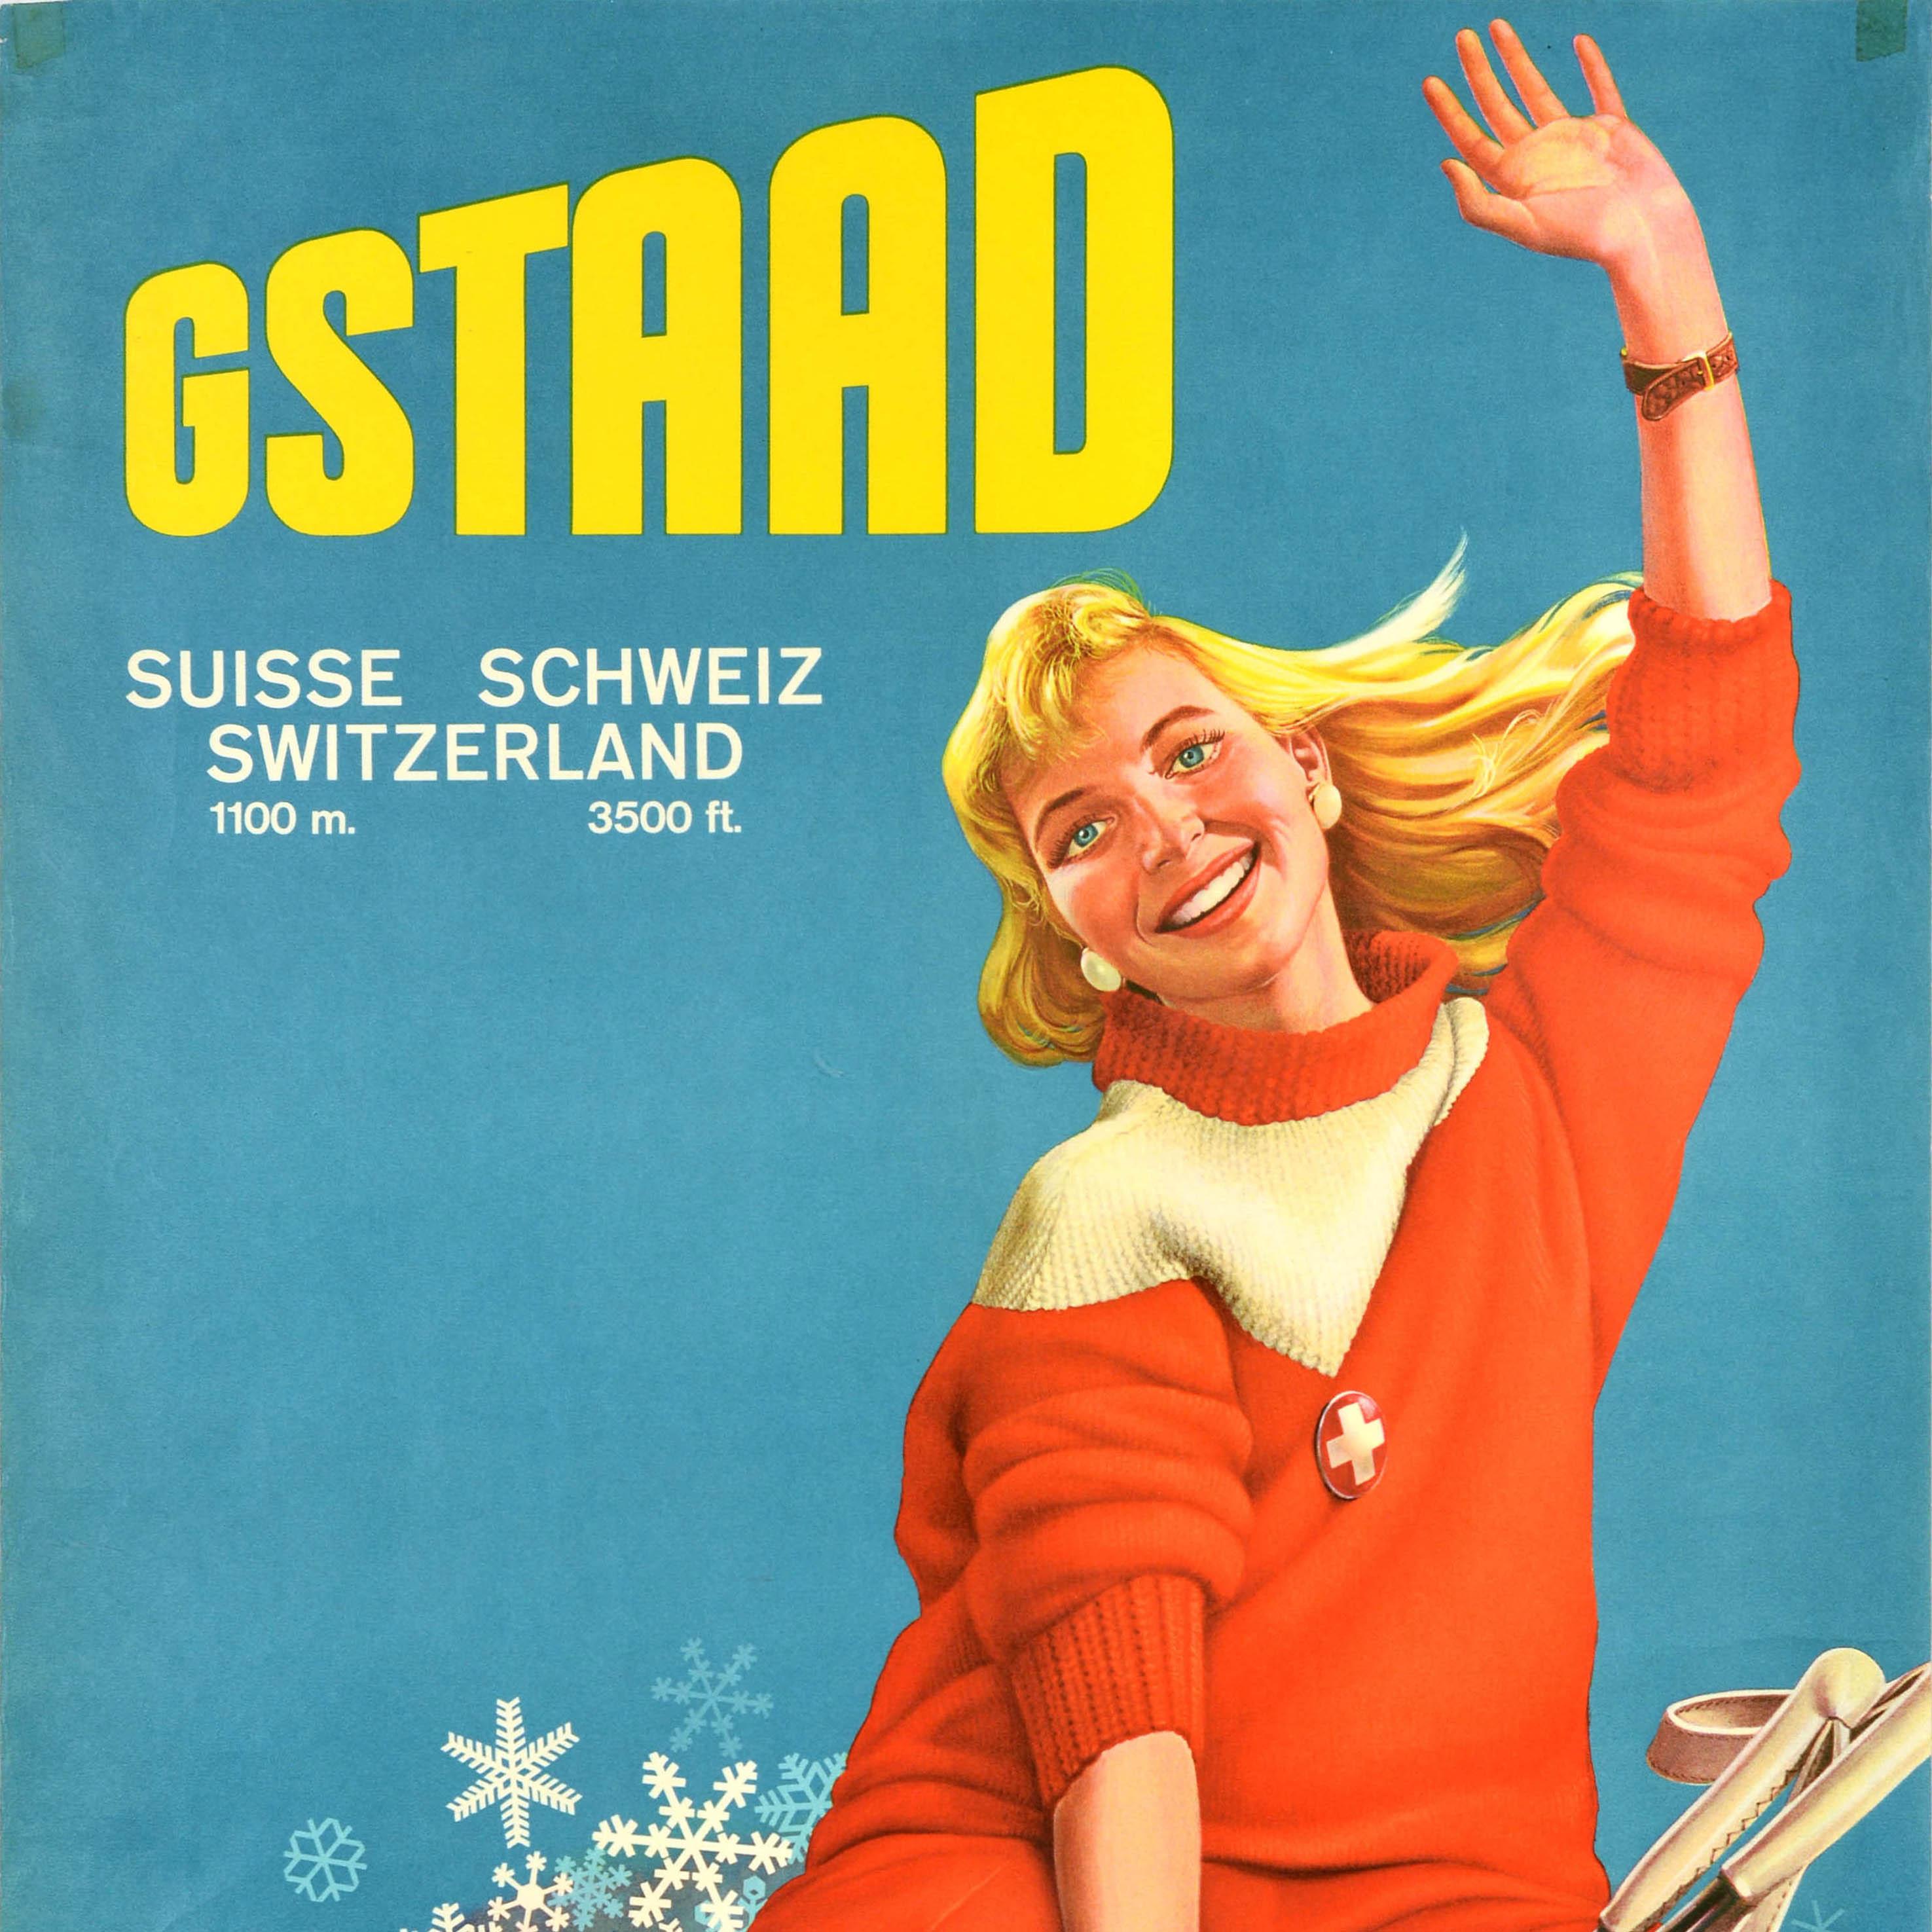 Original Vintage Reise- und Skiplakat für Gstaad Suisse Schweiz Schweiz 1100m 3500ft mit einem Bild von einer lächelnden Dame sitzt auf einer Wolke von Schneeflocken halten Skistöcke in einer Hand und winken dem Betrachter mit der anderen Hand, die